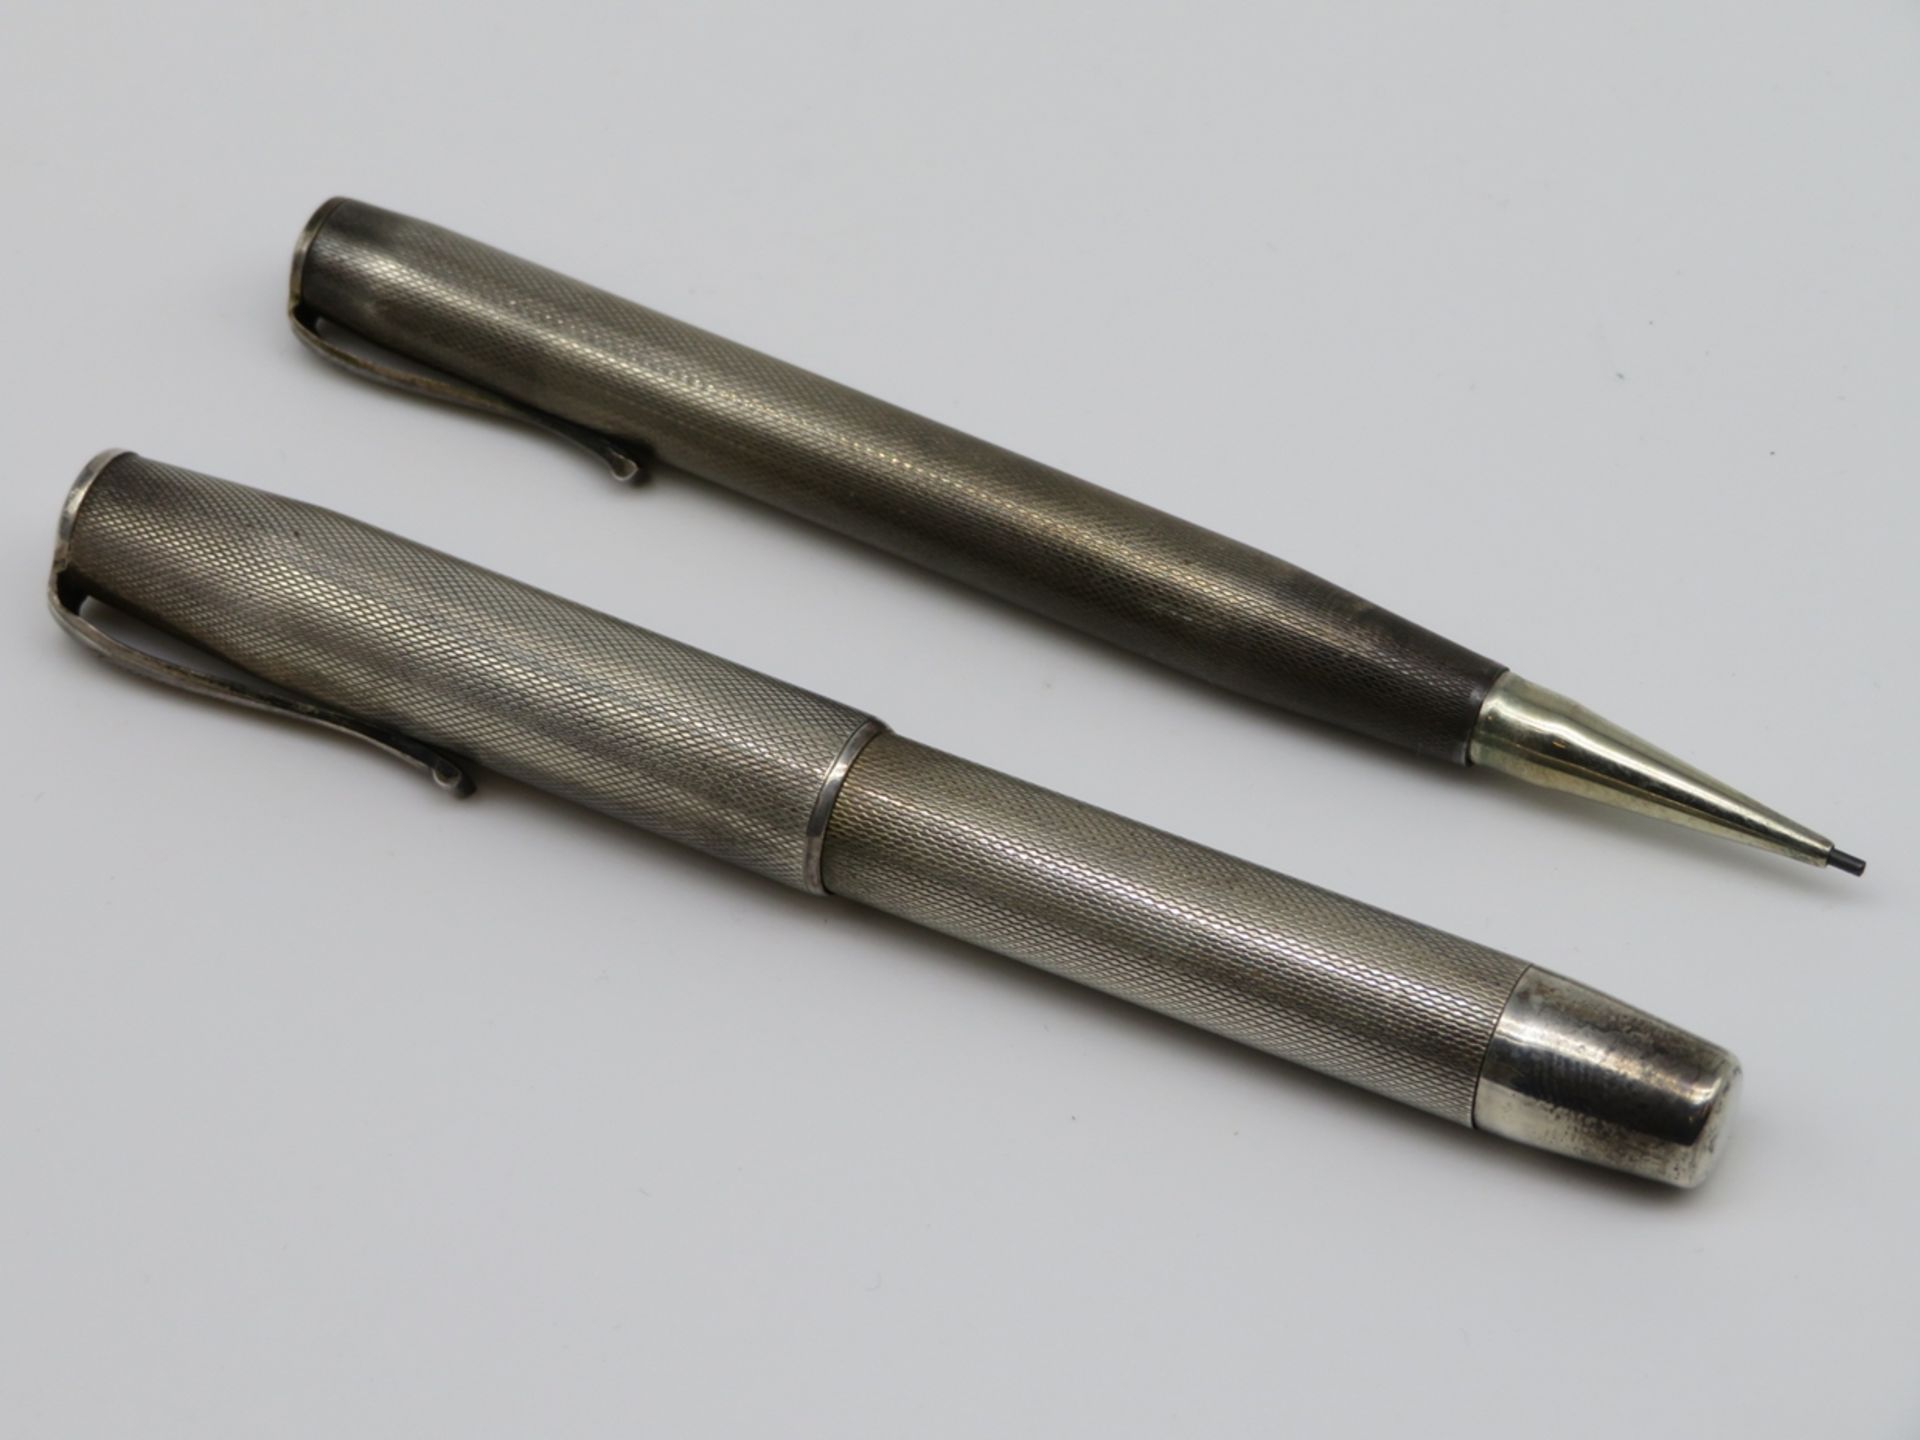 Füllfederhalter und Bleistift, Kraco, 800er Silber, gepunzt, Ridium-Feder, Funktionsfähigkeit nicht